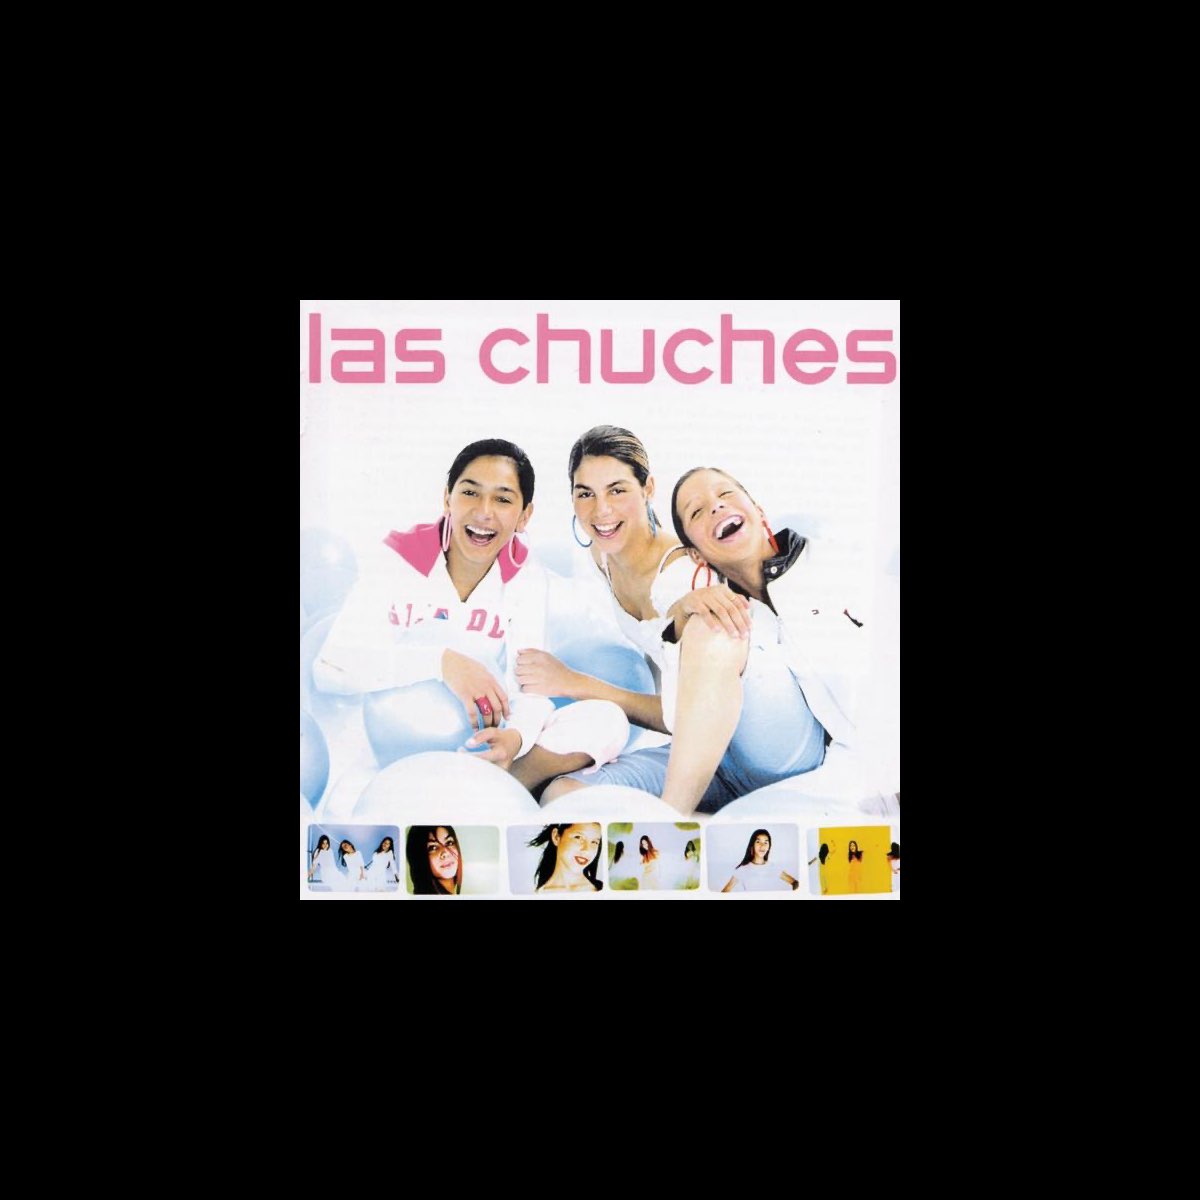 Las Chuches by Las Chuches on Apple Music